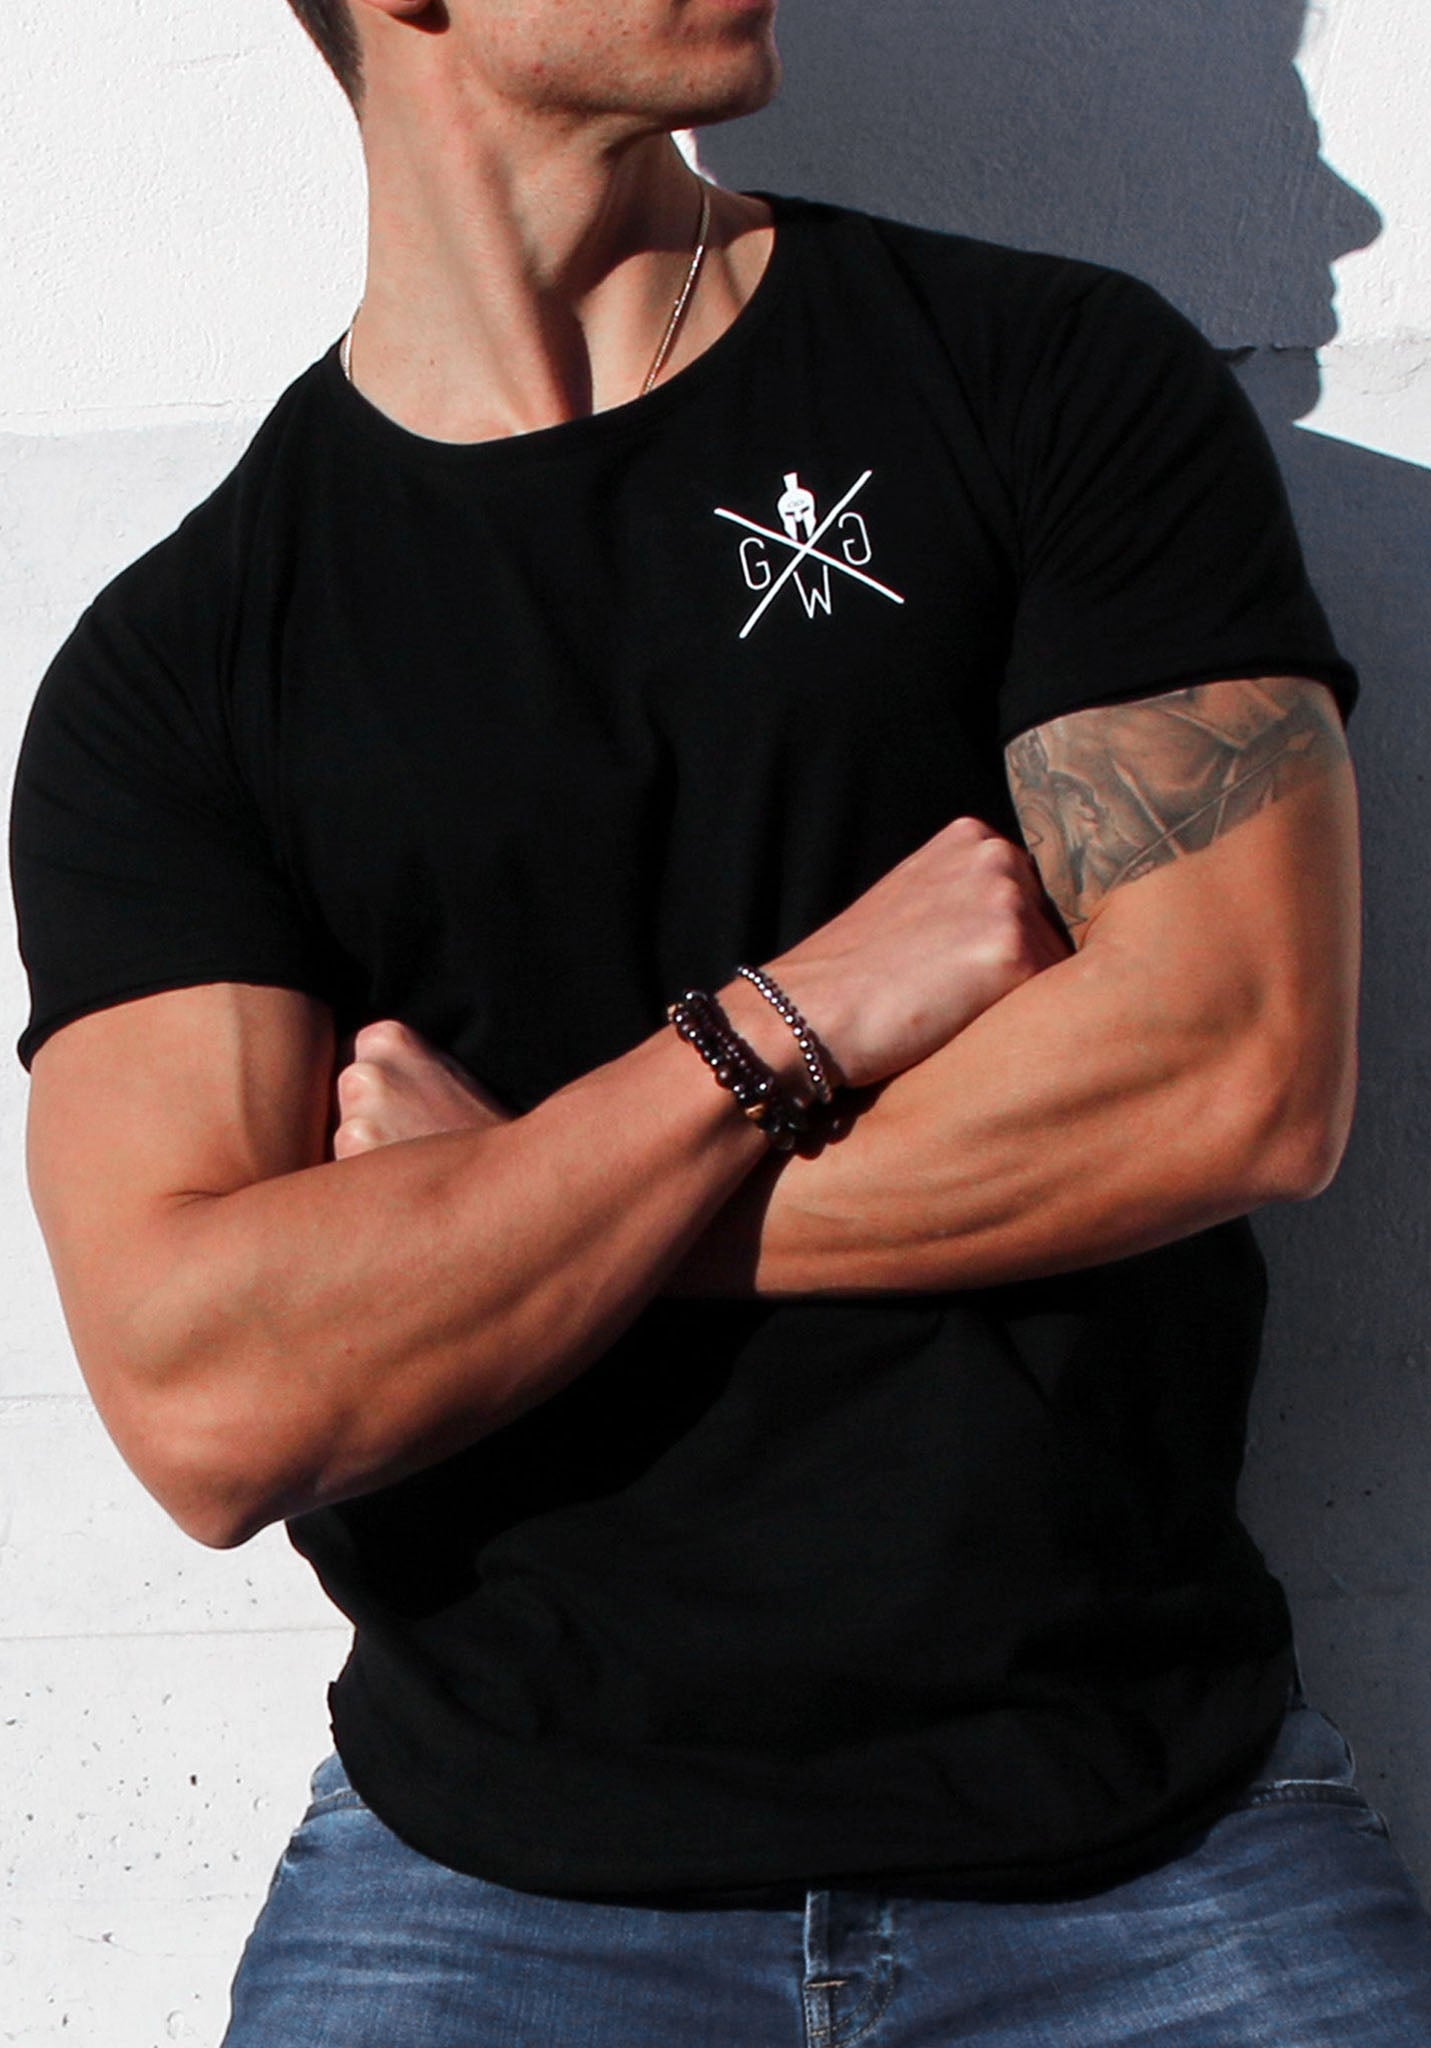 Hochwertiges schwarzes Gym T-Shirt für Herren, perfektes Tragegefühl und lässiges Design.